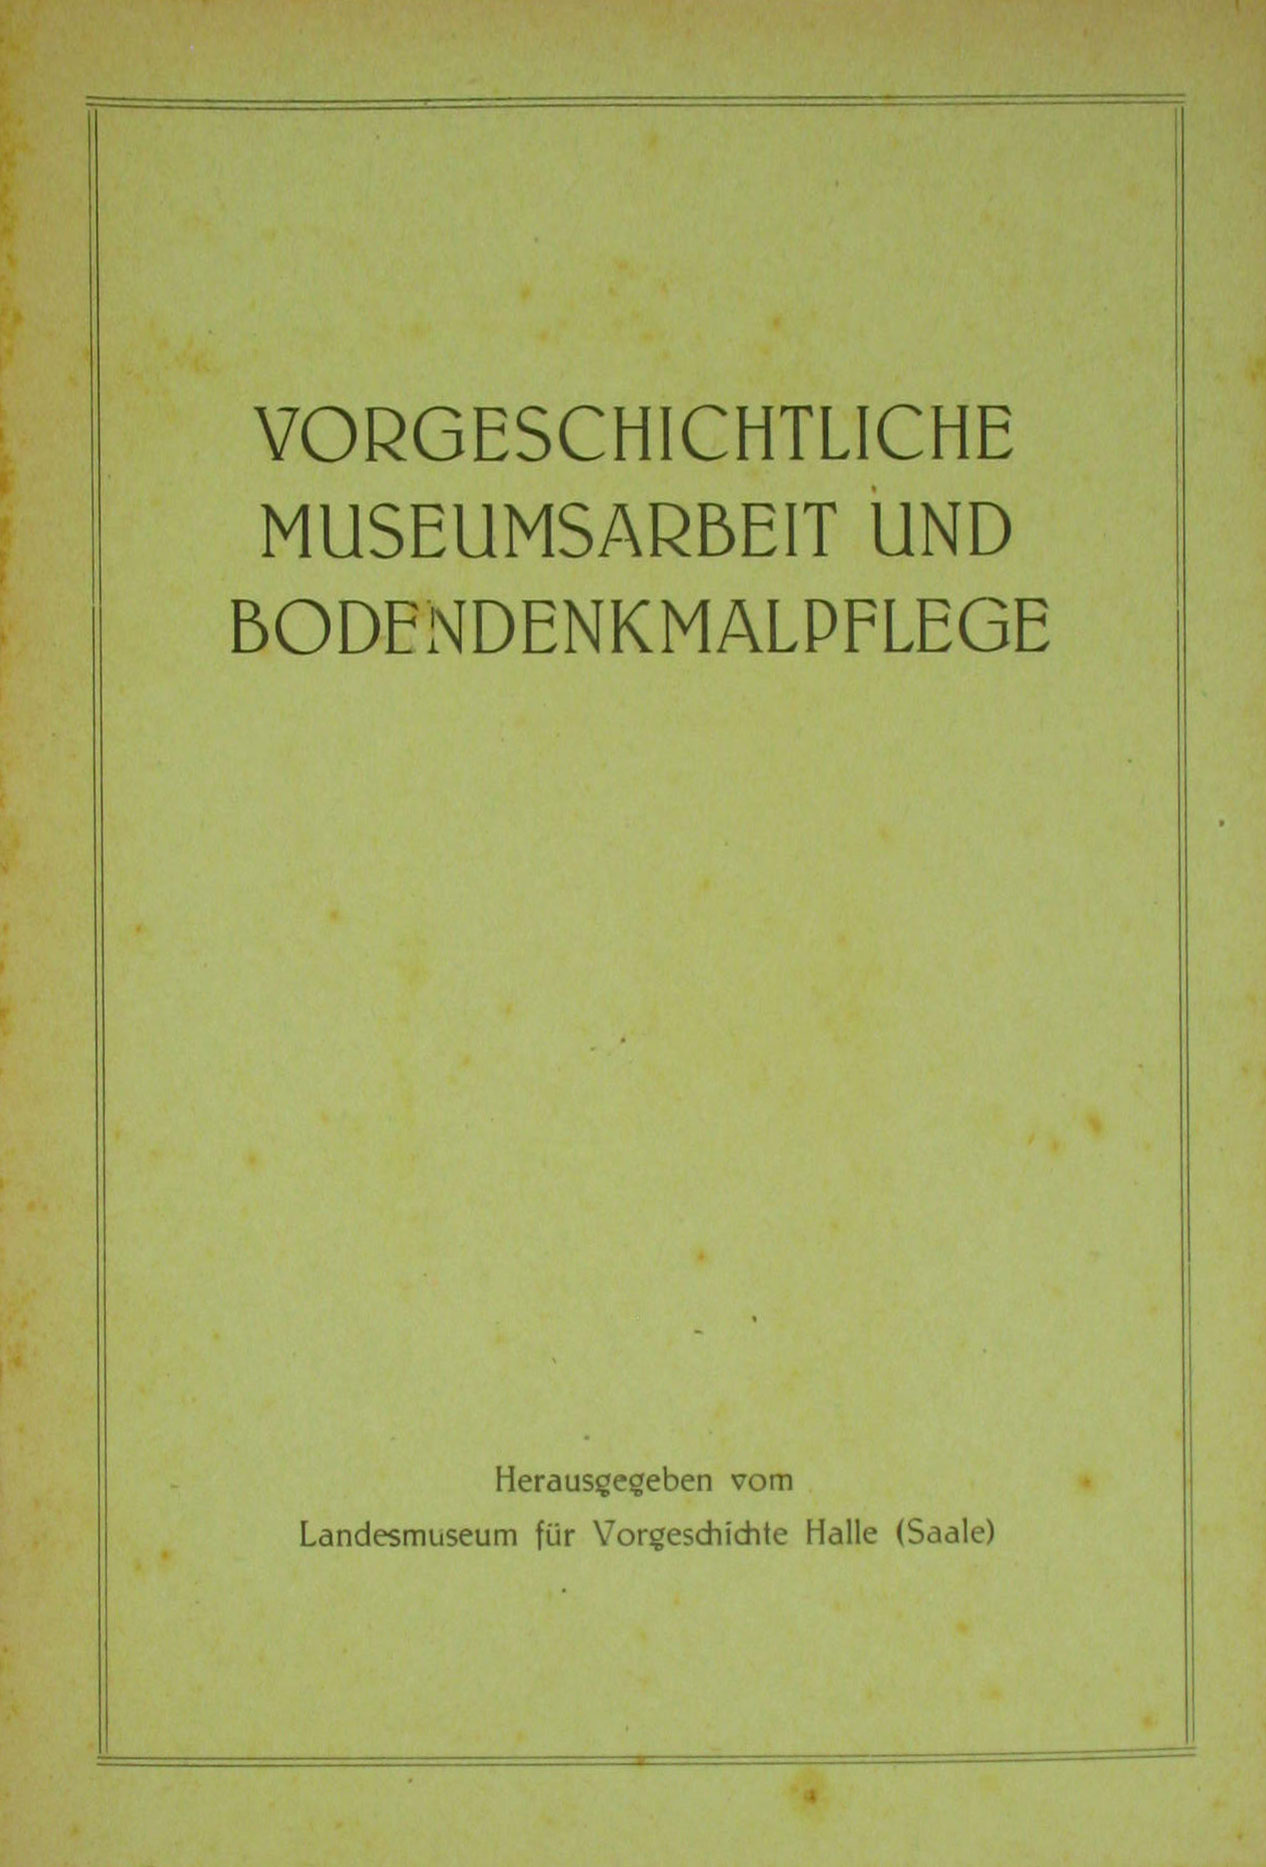   Vorgeschichtliche Museumsarbeit und Bodendenkmalpflege (Nr. 2 / 1955) 